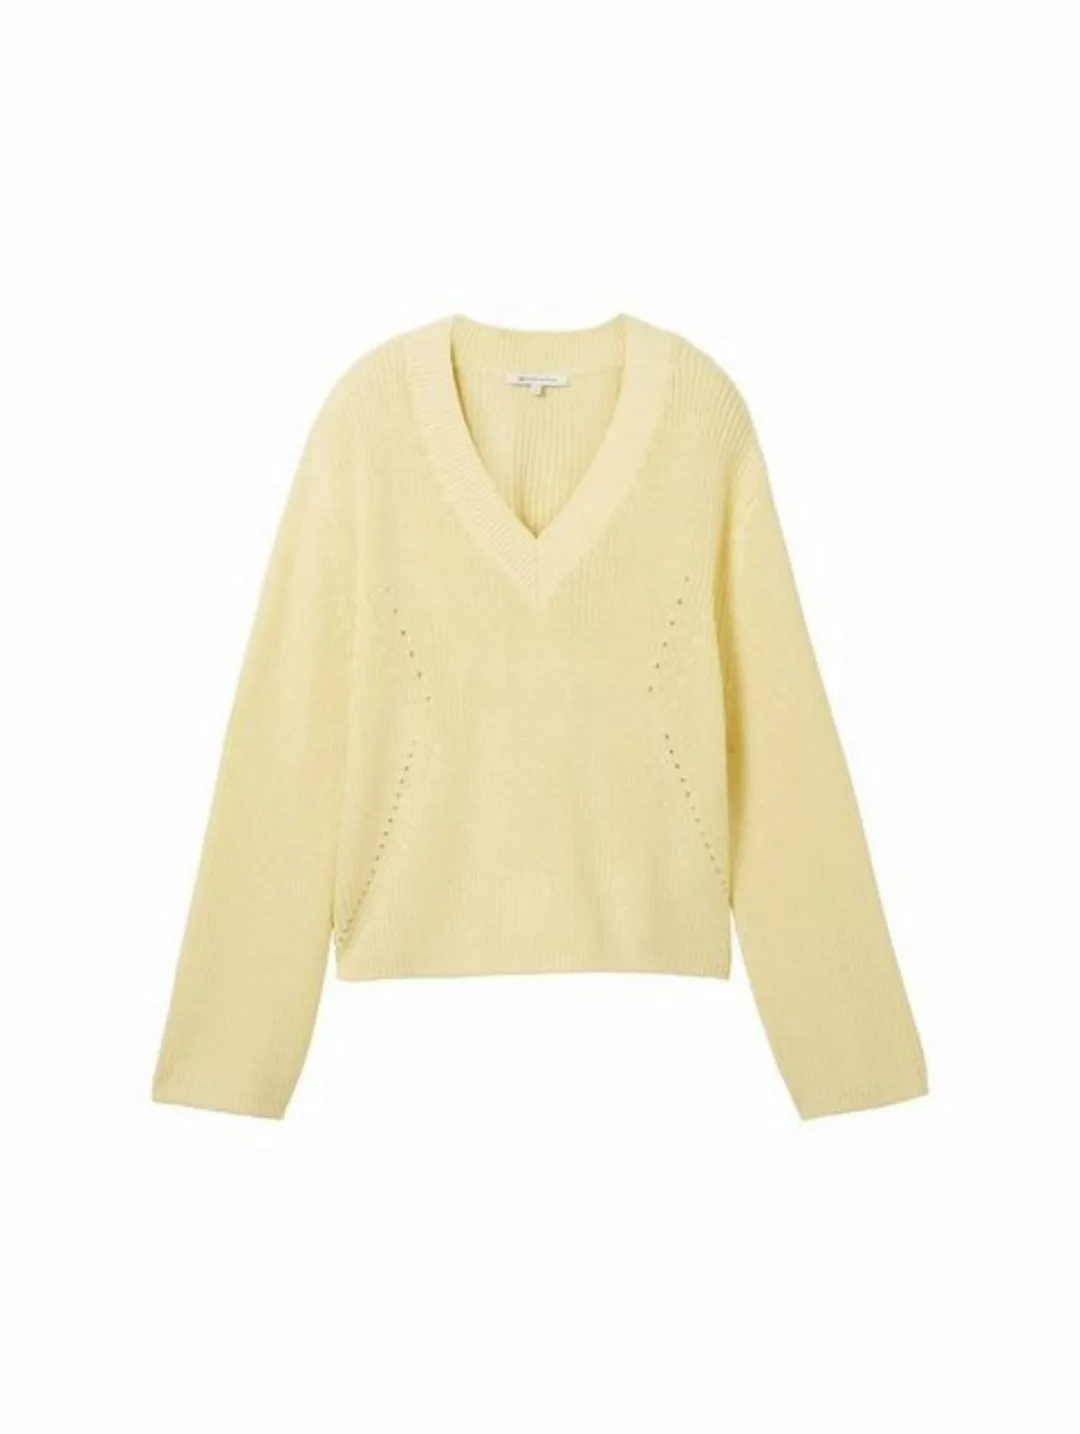 TOM TAILOR Denim Sweatshirt structured v-neck pullover, light yellow günstig online kaufen